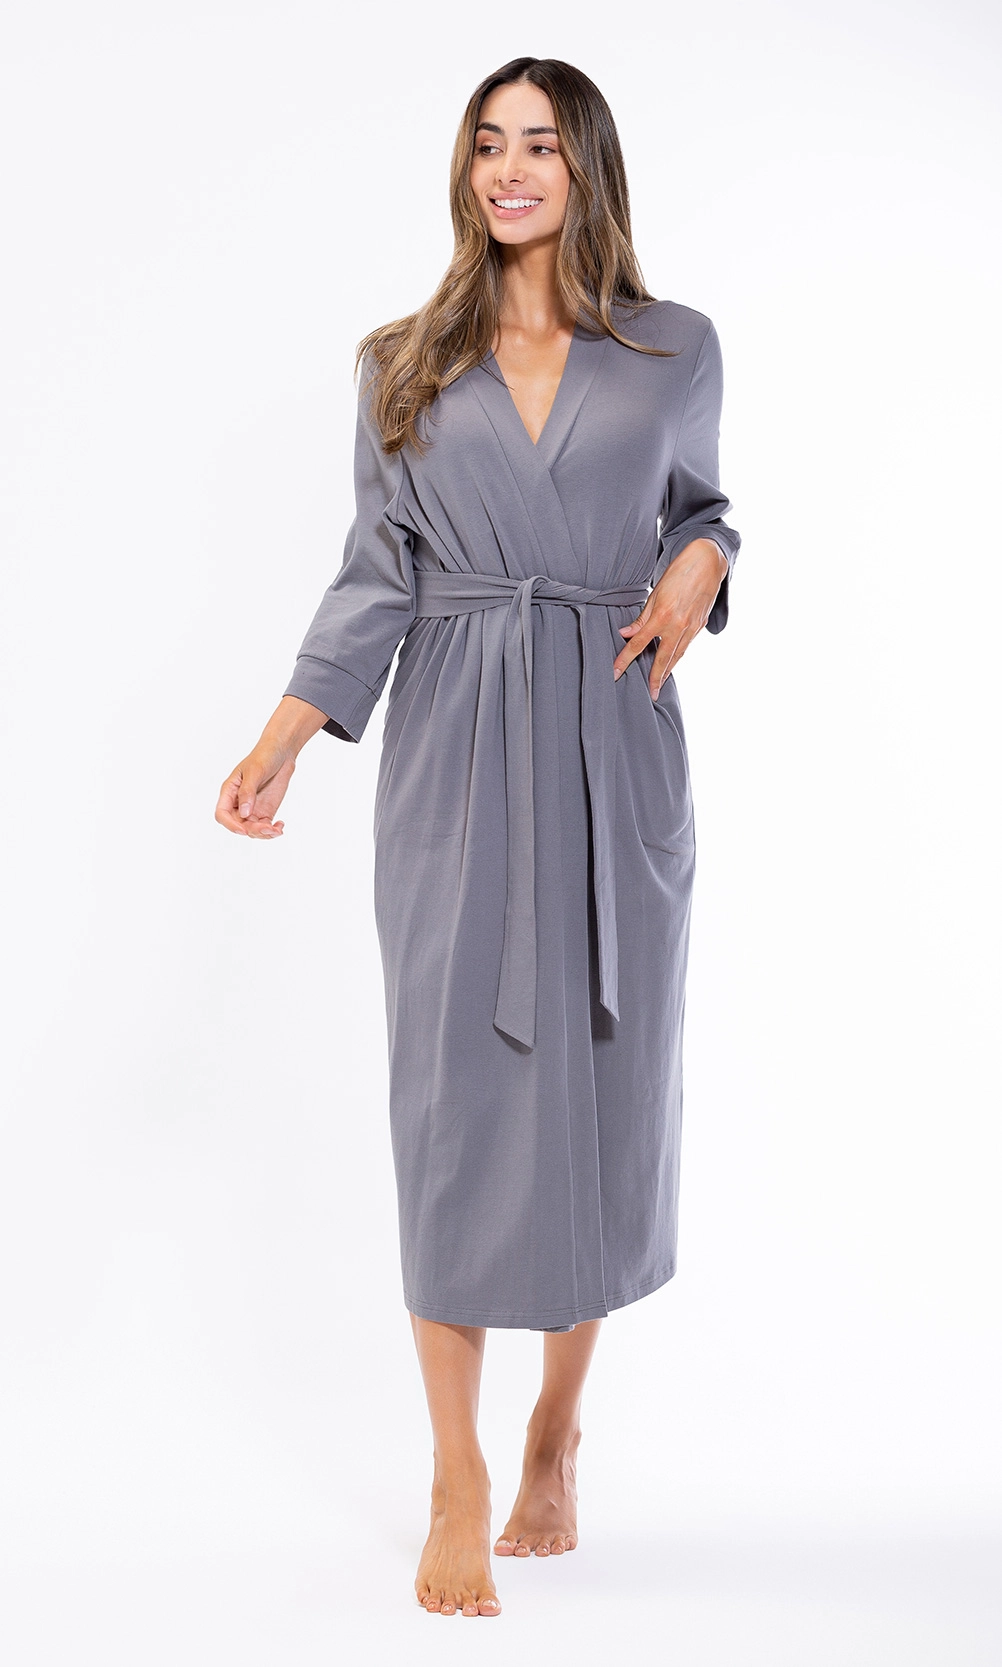 Women's :: Knit Robes :: Cotton Charcoal Gray Knit Kimono Robe ...